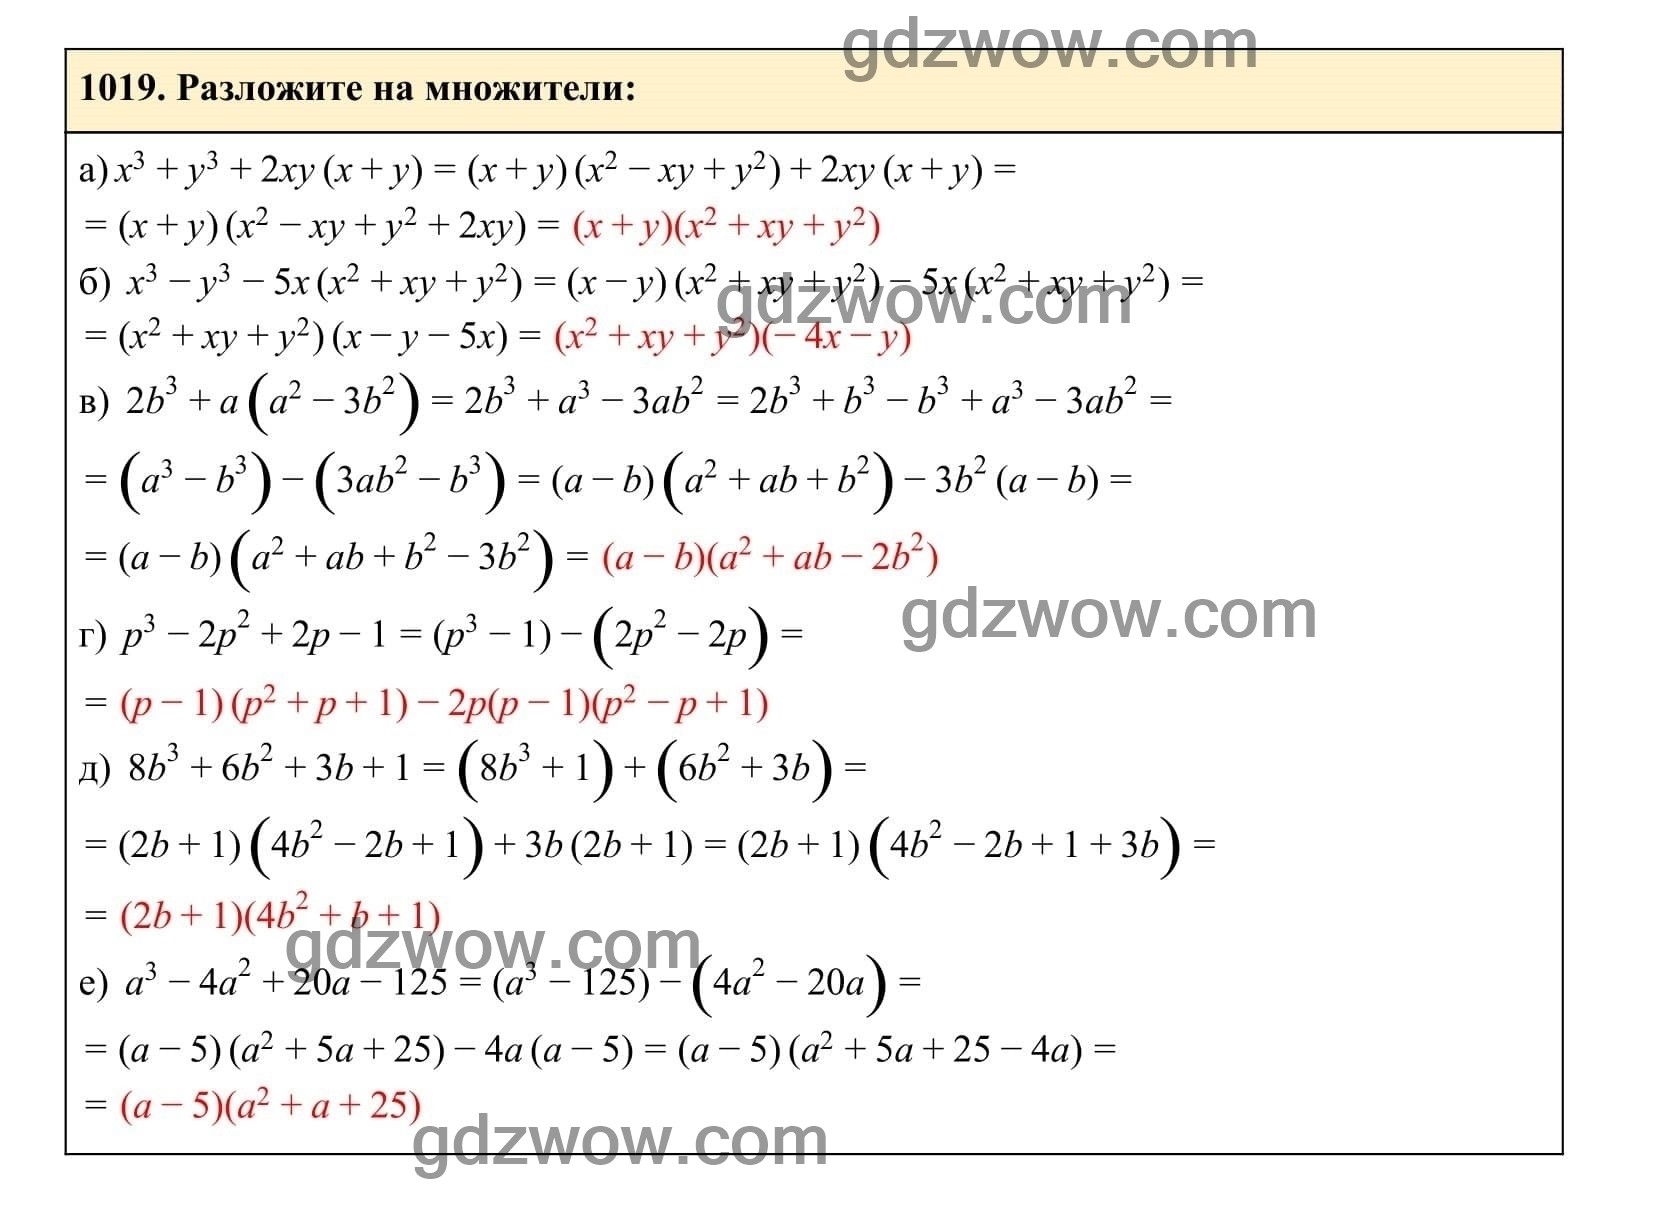 Упражнение 1019 - ГДЗ по Алгебре 7 класс Учебник Макарычев (решебник) - GDZwow